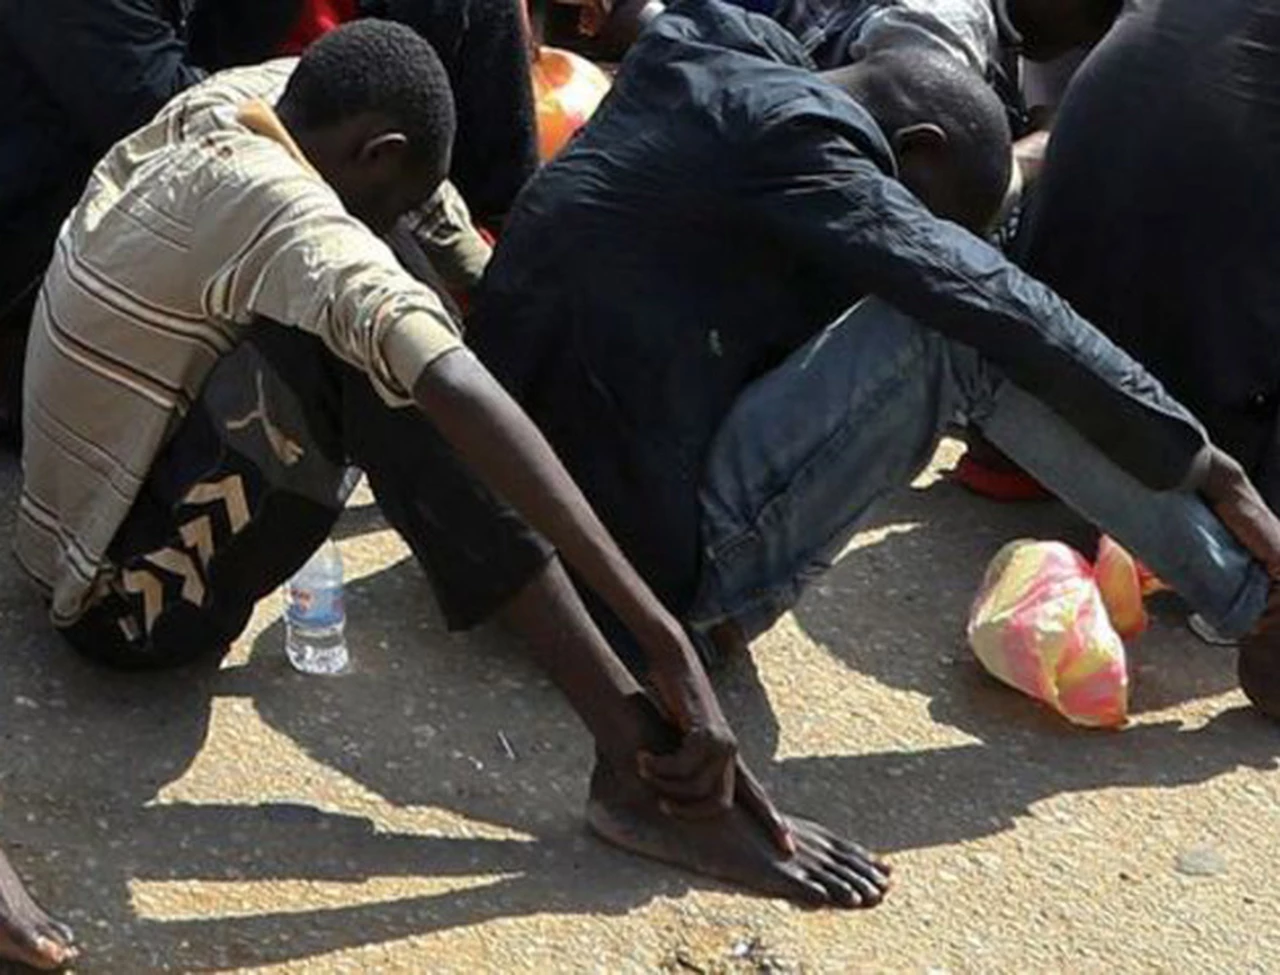 Libia: drama de los migrantes africanos vendidos en "mercados de esclavos"